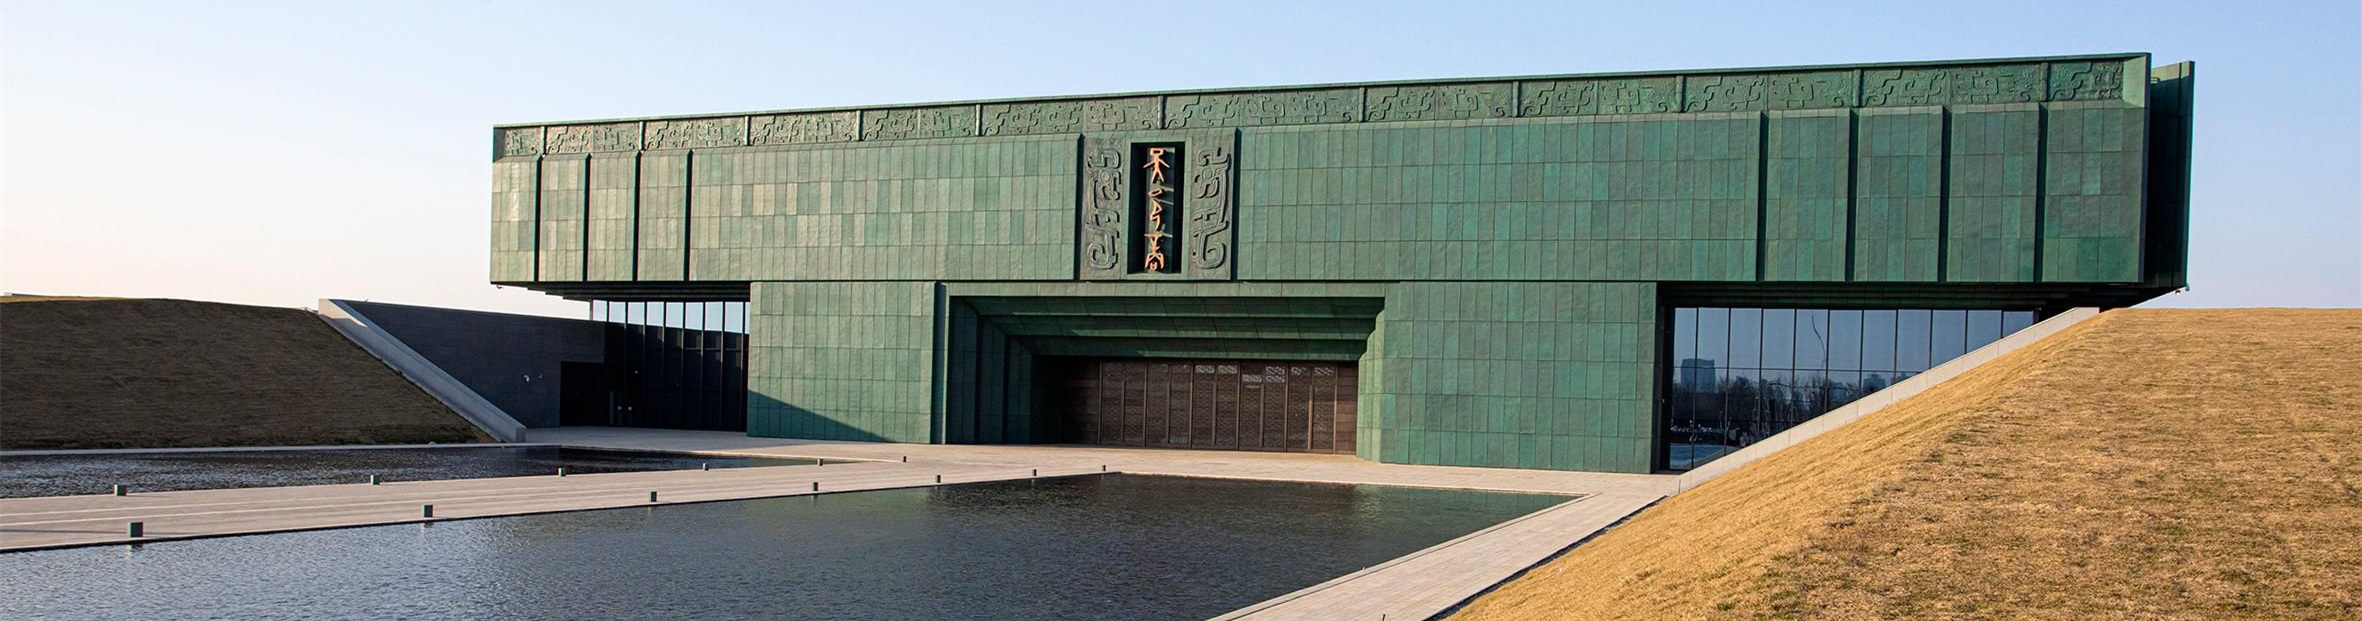 数千件珍贵文物首次亮相！殷墟博物馆新馆今天正式对公众开放